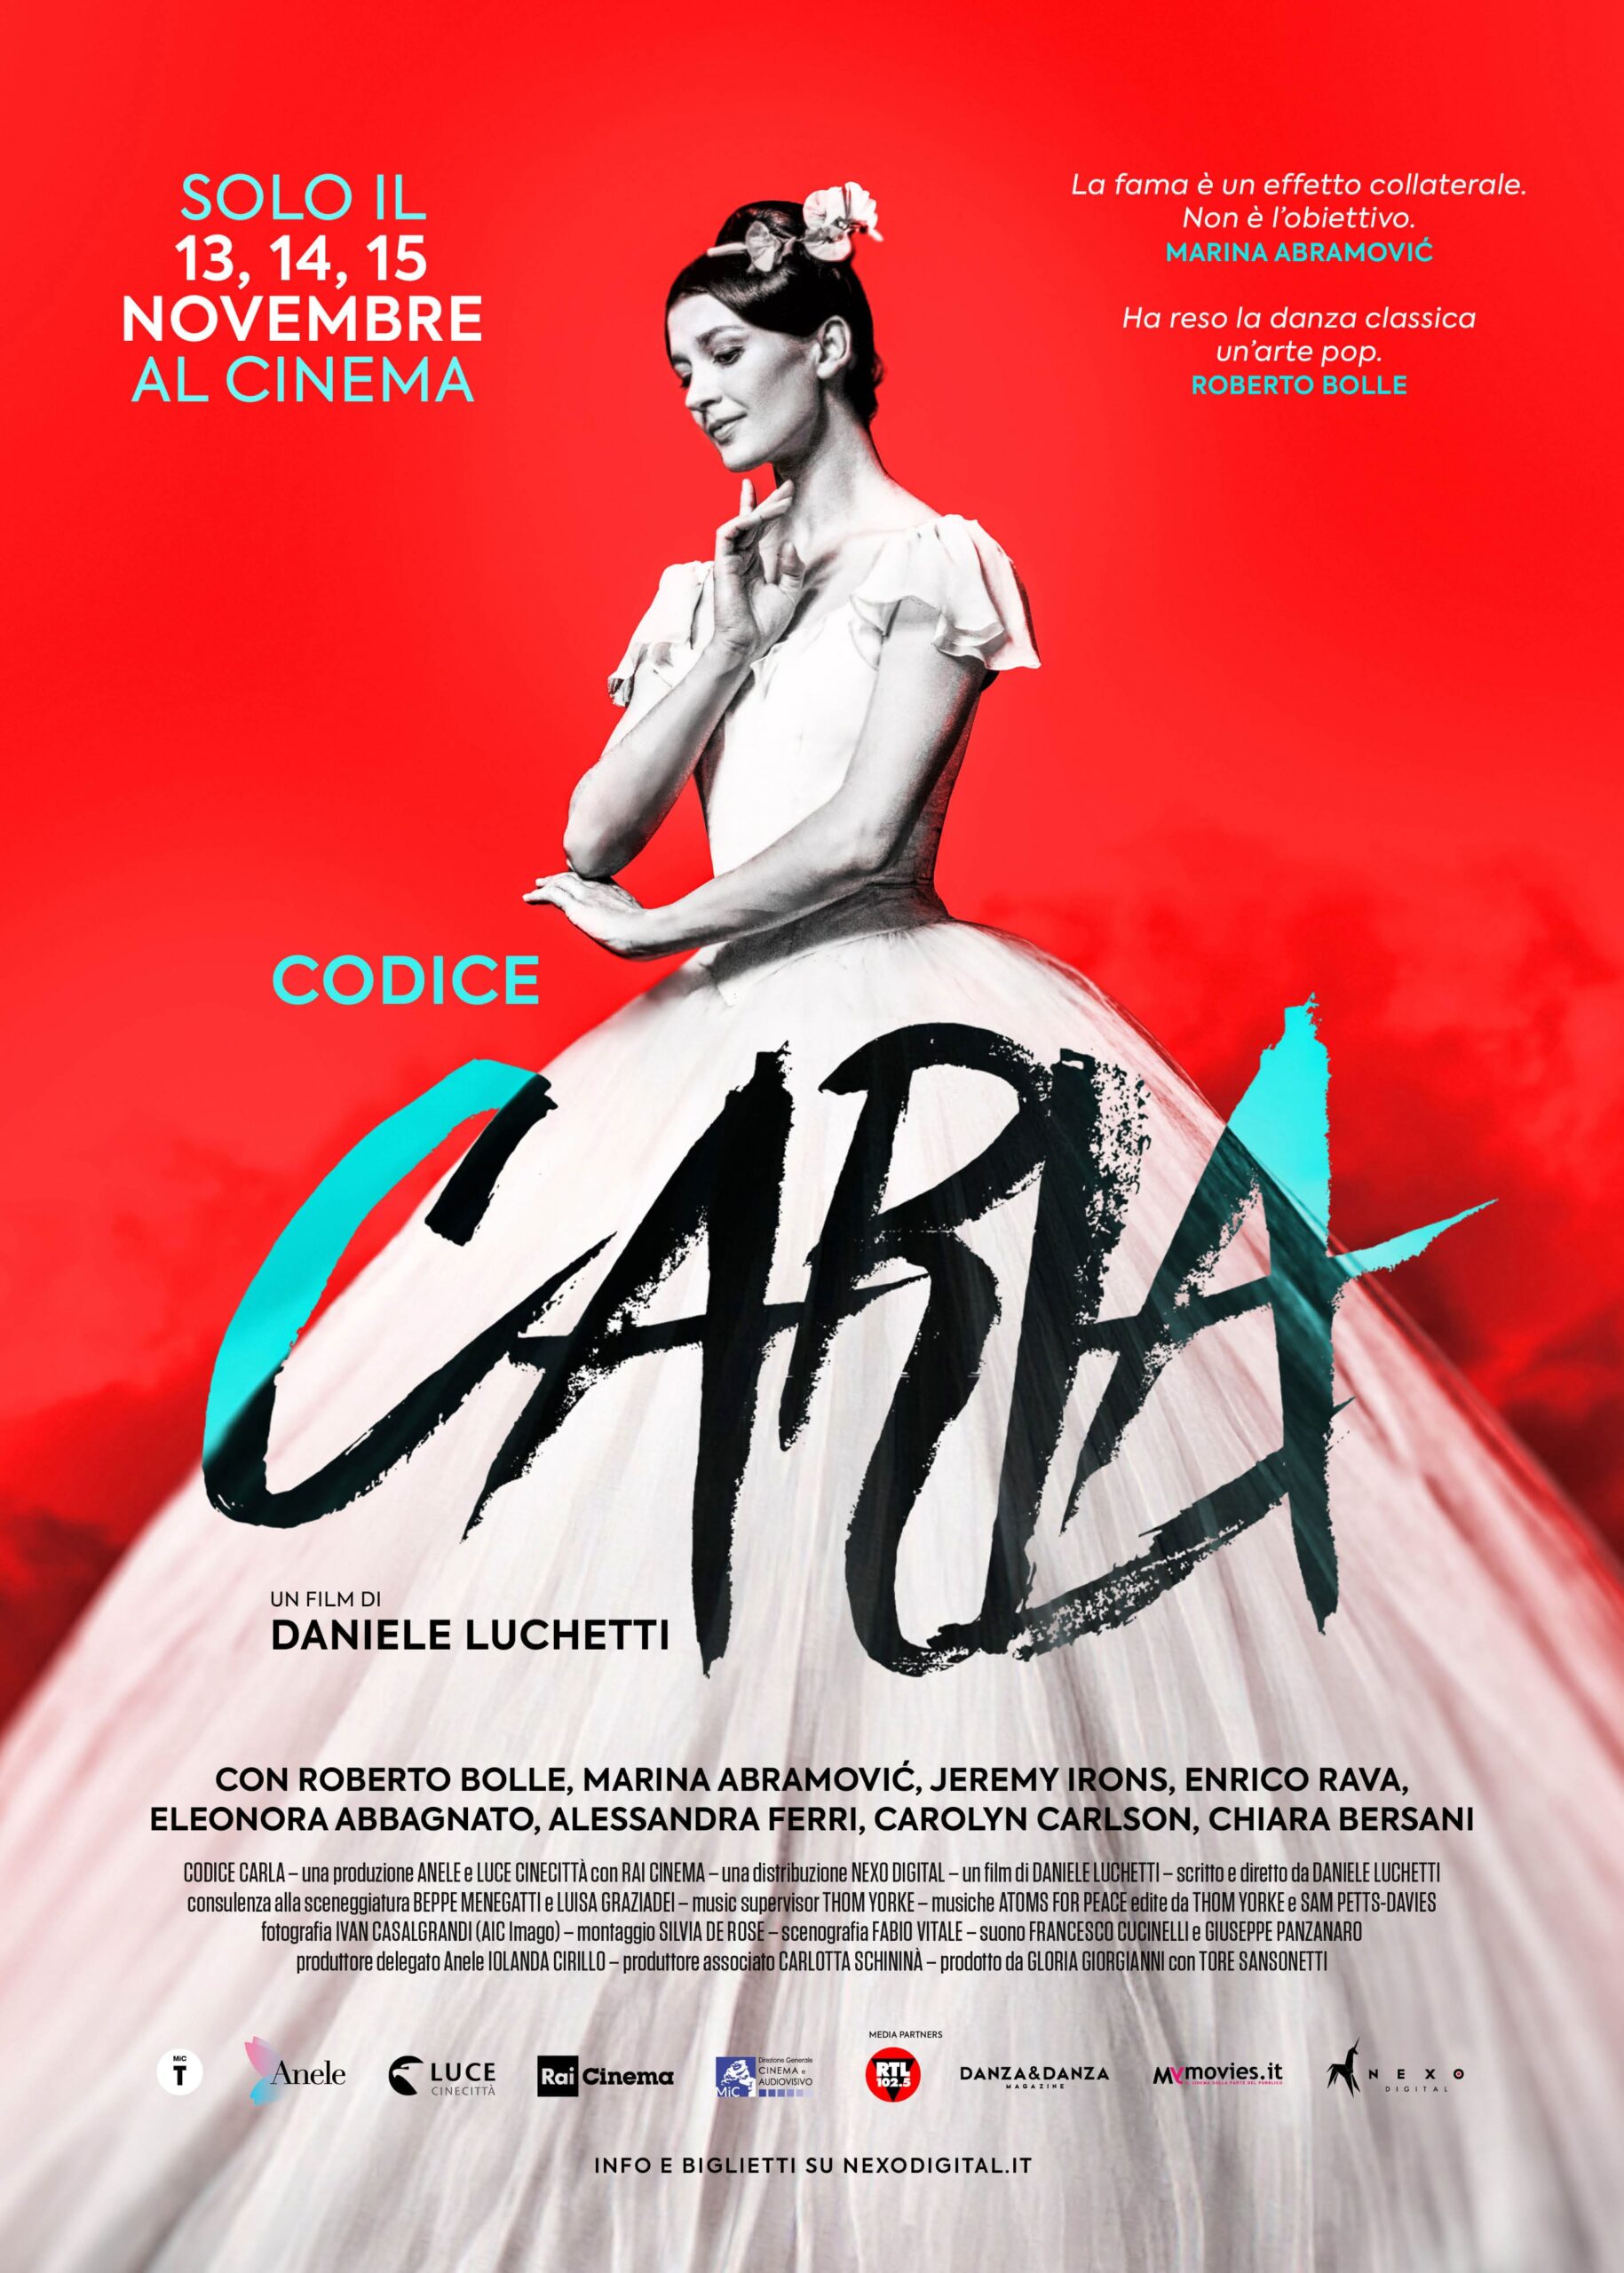 Al cinema dal 13 al 15 novembre: “Codice Carla”